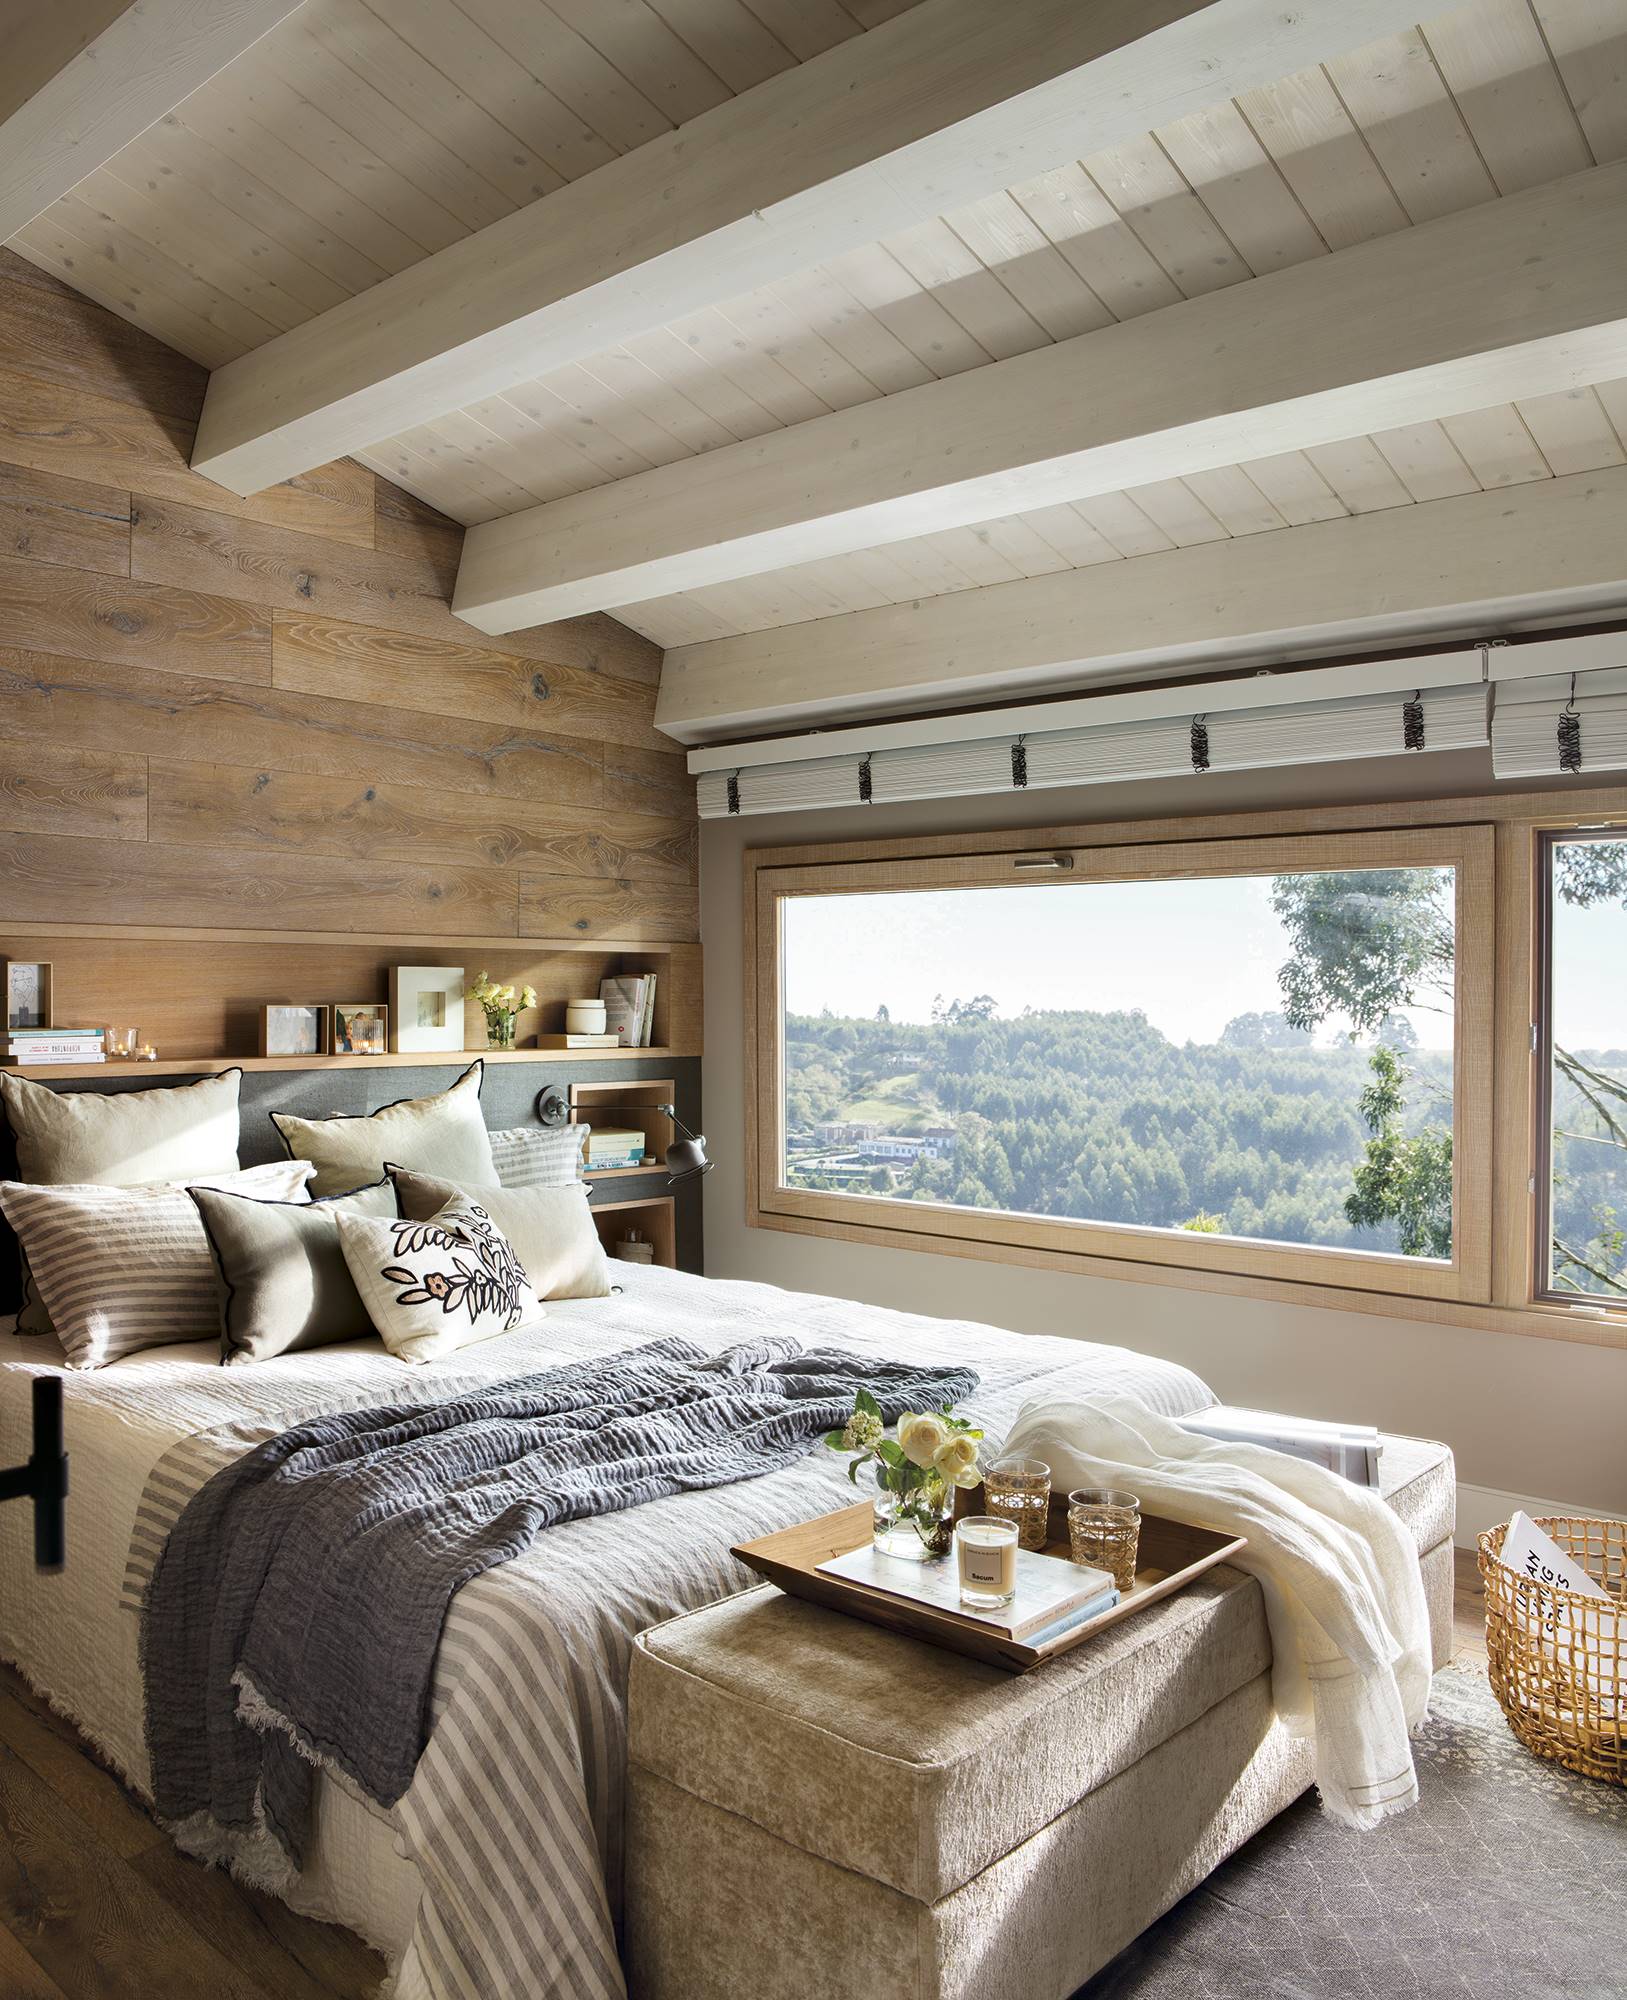 Dormitorio con cabecero de madera de roble, grandes ventanales y banco tapizado a los pies de la cama.